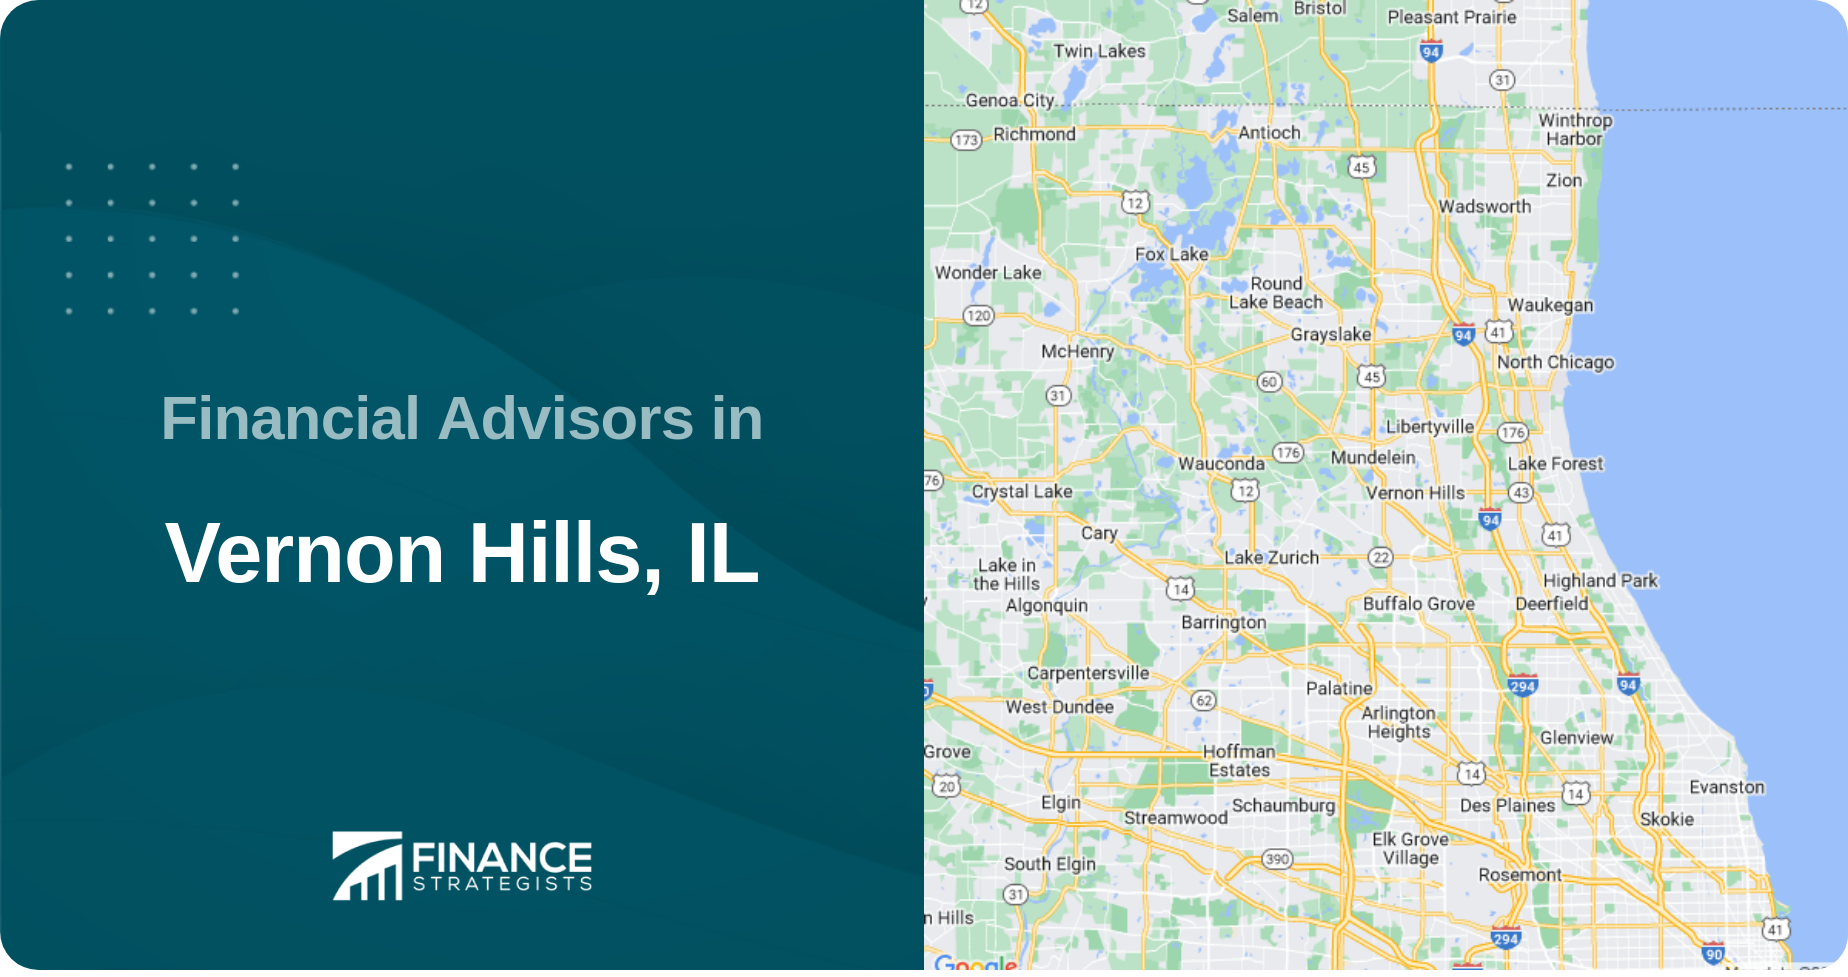 Financial Advisors in Vernon Hills, IL